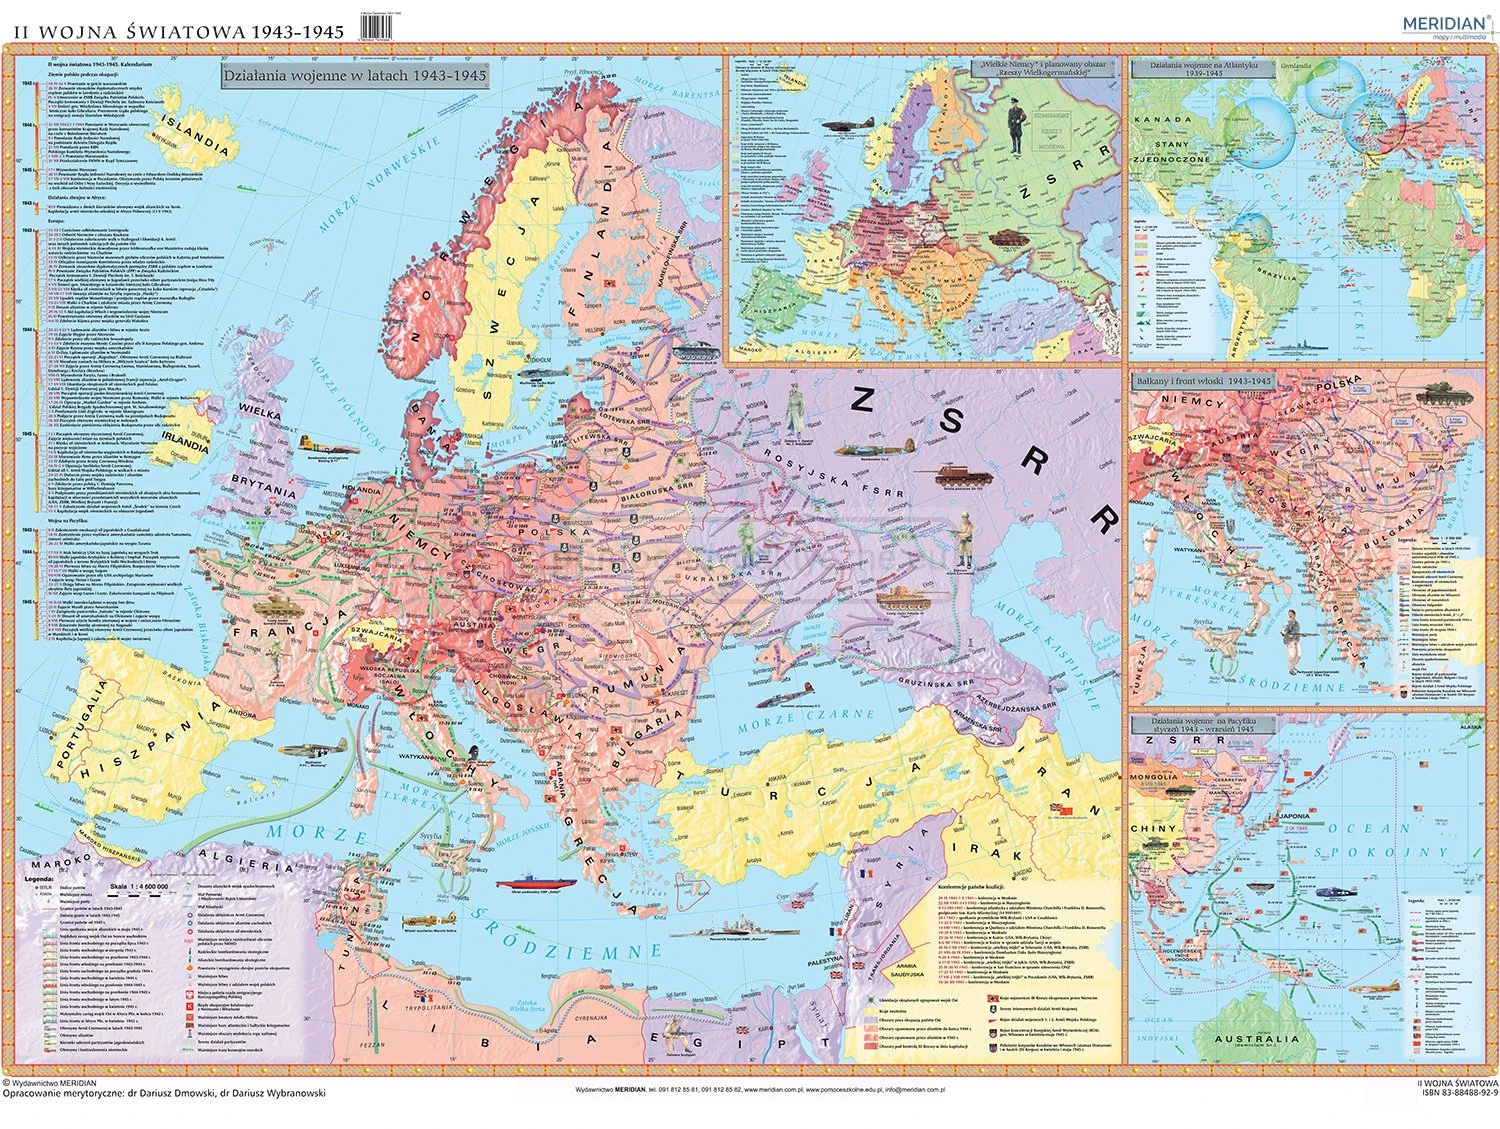  II Wojna Światowa 1943-1945 - mapa ścienna historyczna 